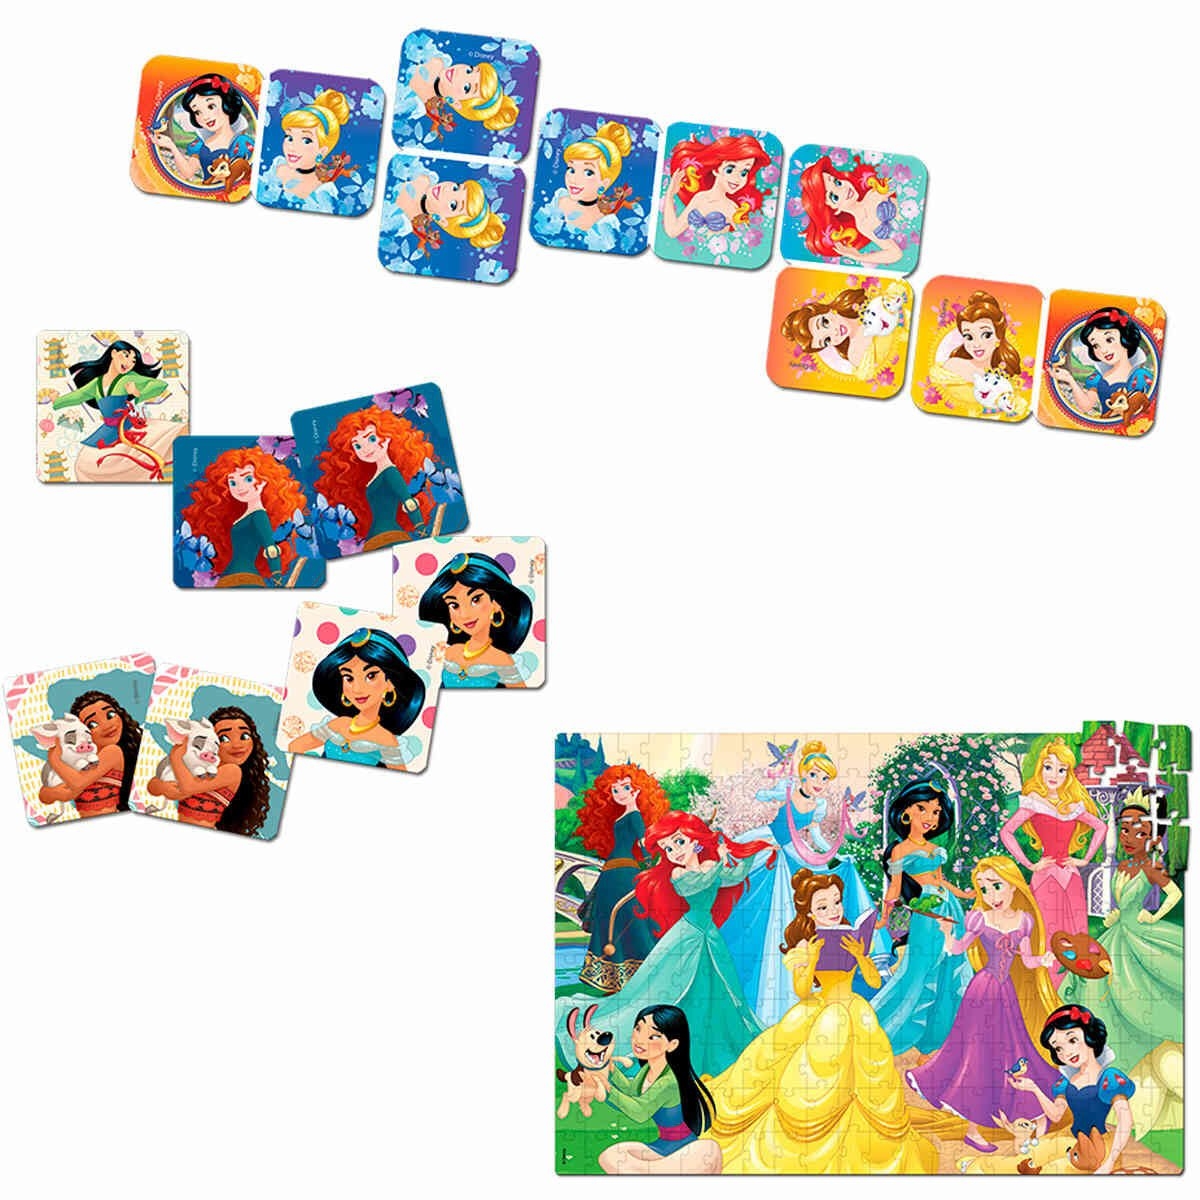 Jogo De Domino Infantil Princesas Disney 28 Pecas Toyster - Carrefour